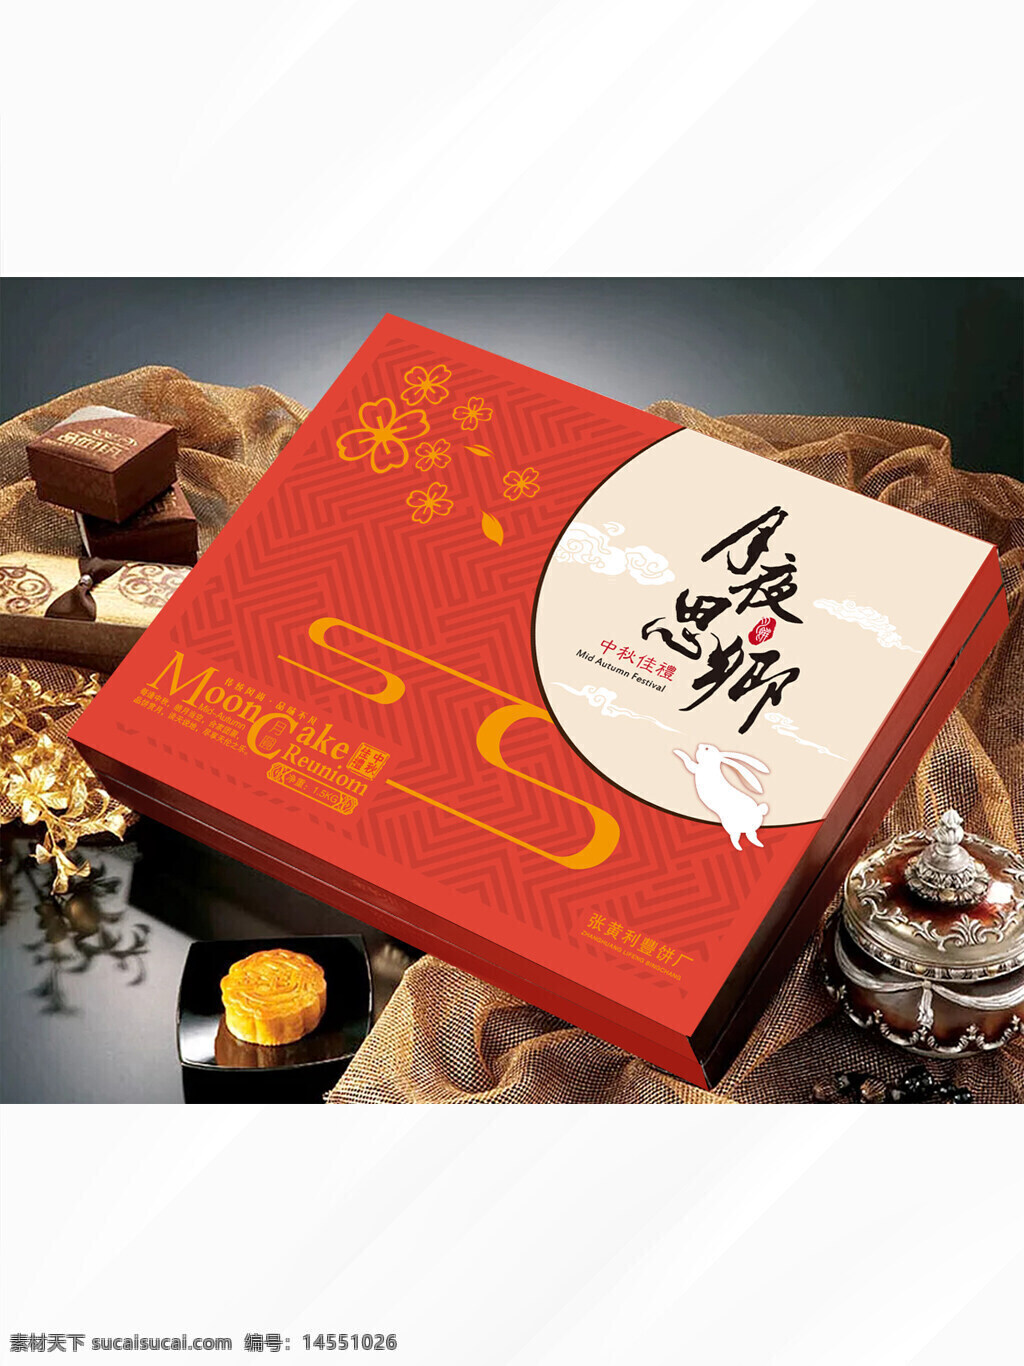 月饼包装 月饼礼品包装 八月十五礼盒 中秋节礼盒